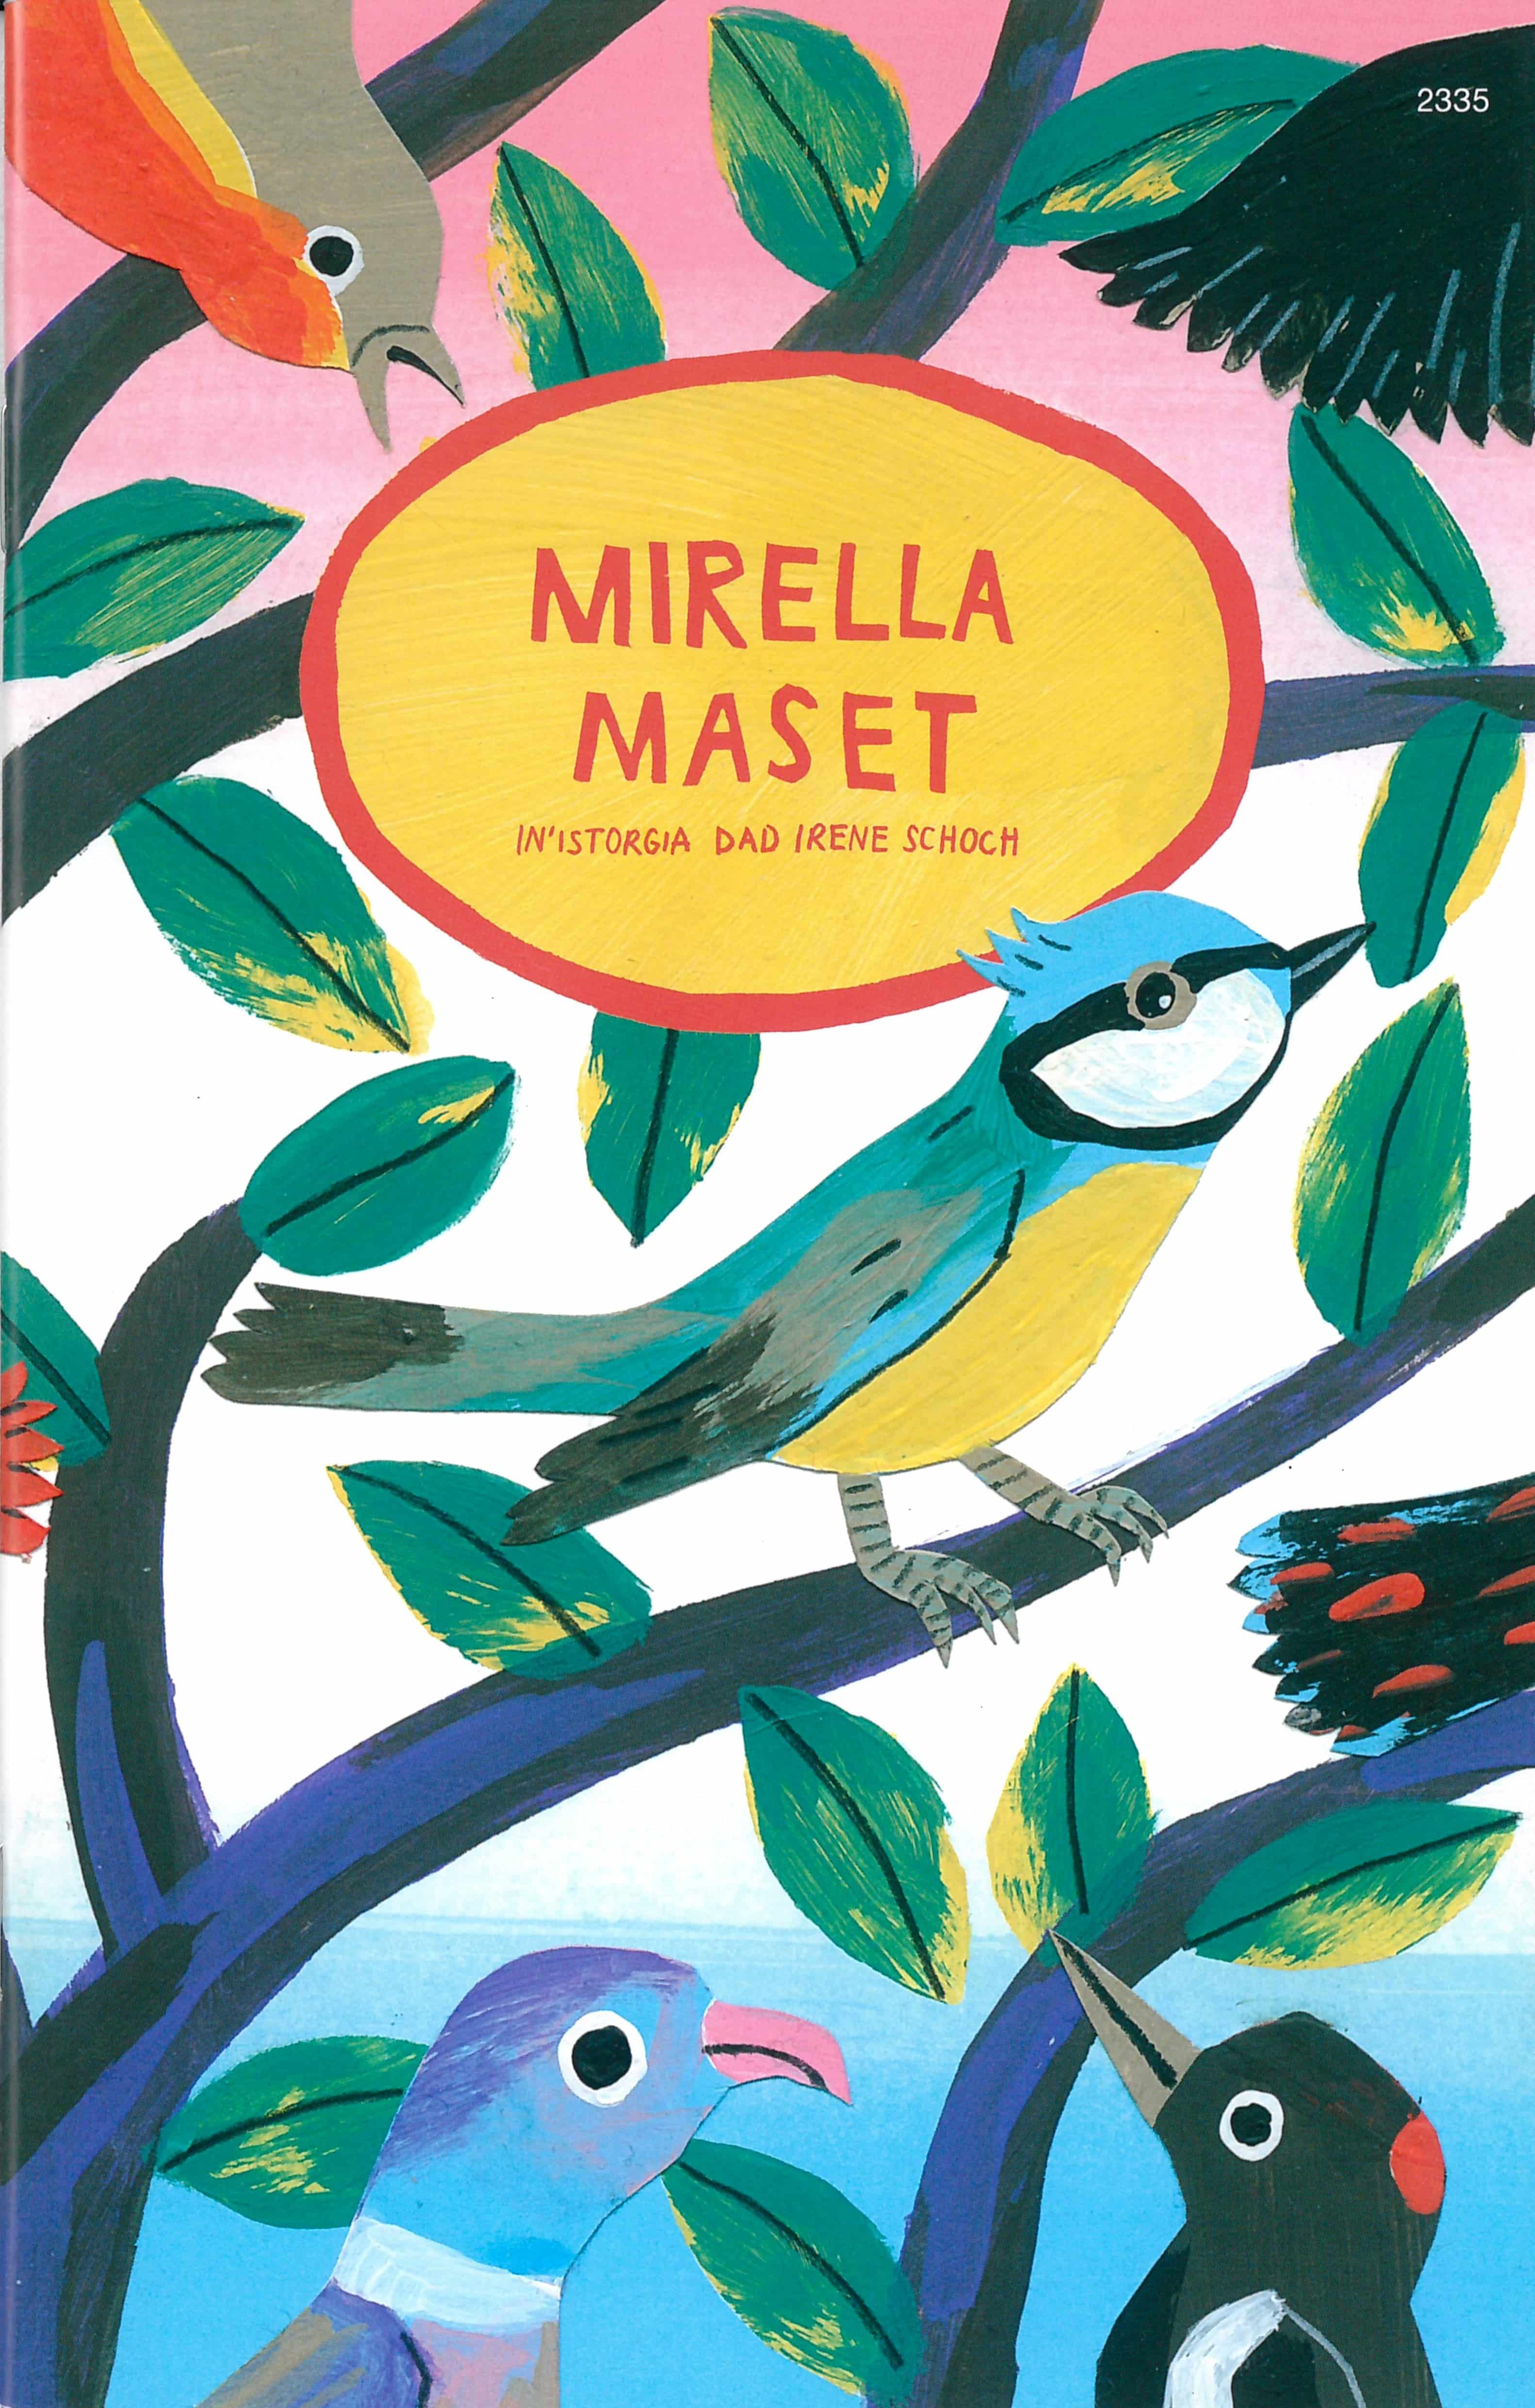 Mirella Maset (Rumantsch Grischun), ein Kinderbuch von Irene Schoch, SJW Verlag, Jahreszeiten, Mobbing & Toleranz